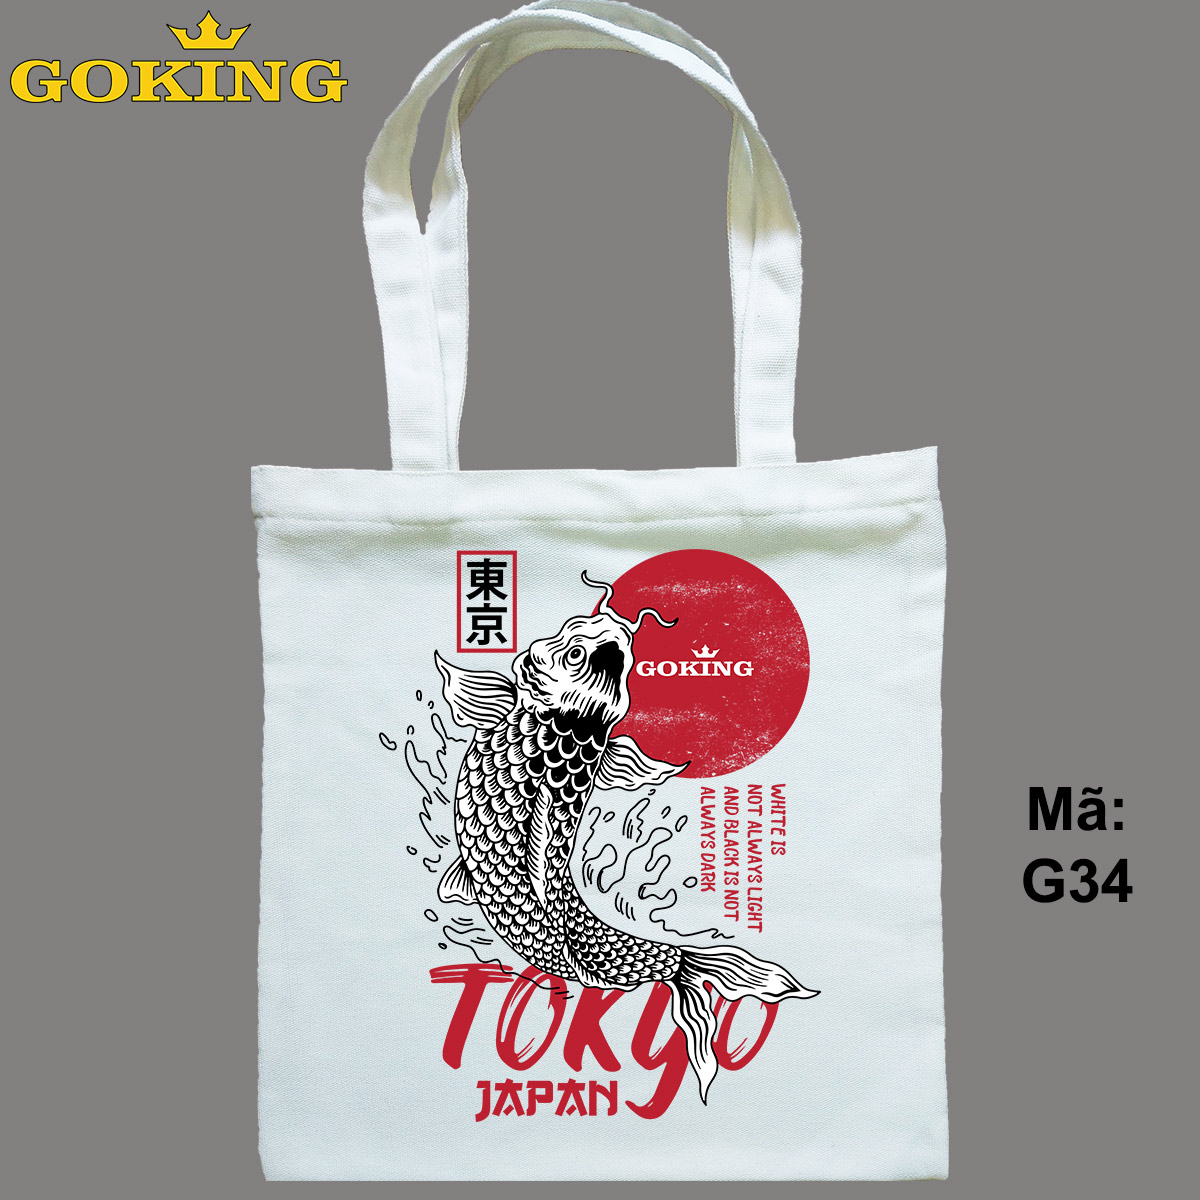 Túi xách TOKYO JAPAN, mã G34. Quà tặng cao cấp cho gia đình, nam nữ cặp đôi, hội nhóm, doanh nghiệp